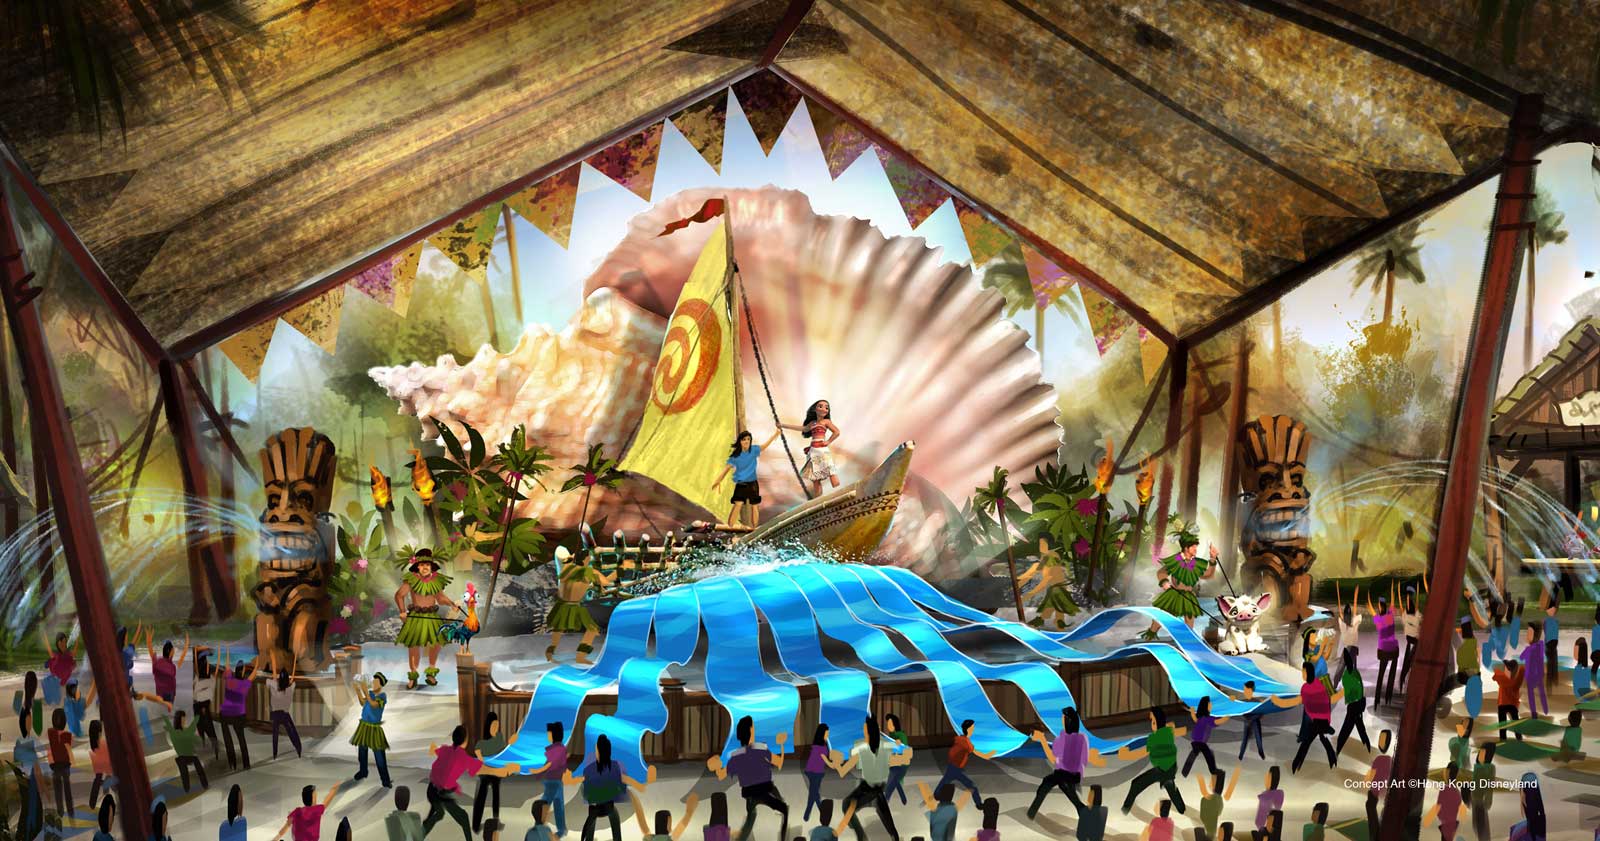 Hong Kong Disneyland Expansion - Adventureland Showplace